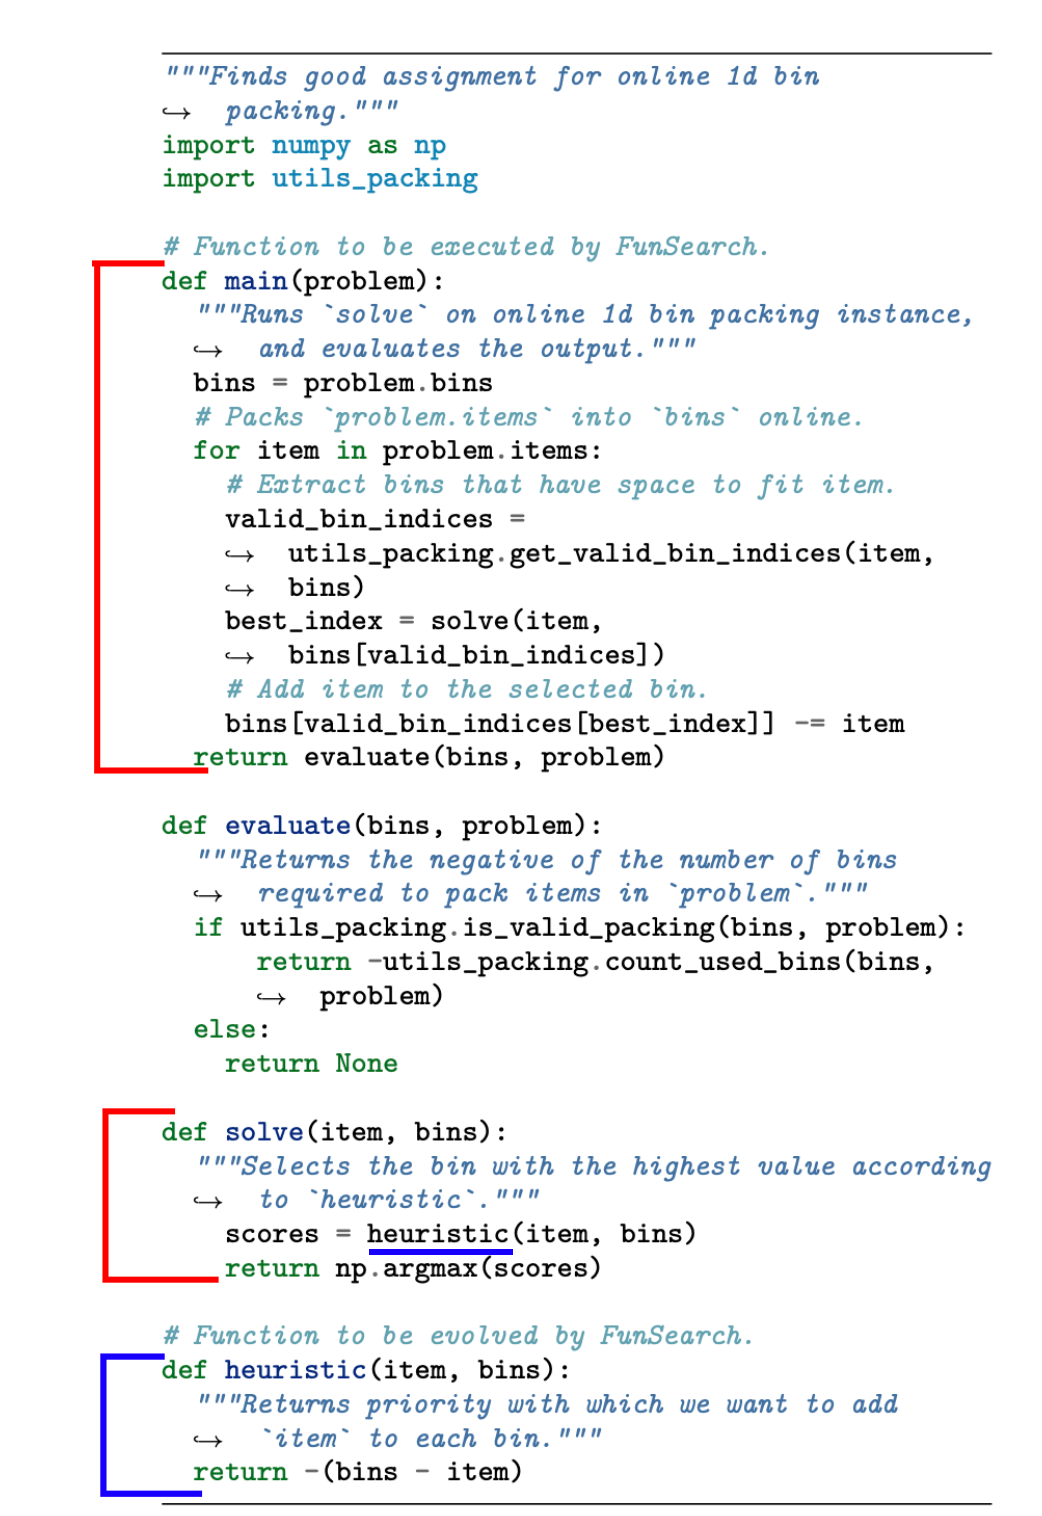 Красная часть кода написана человеком заранее и не меняется в процессе, задача же модели — улучшить эвристику, выделенную синим. Как описано в тексте, эвристика применяется к каждой коробке поочерёдно (синяя черта ближе к концу).